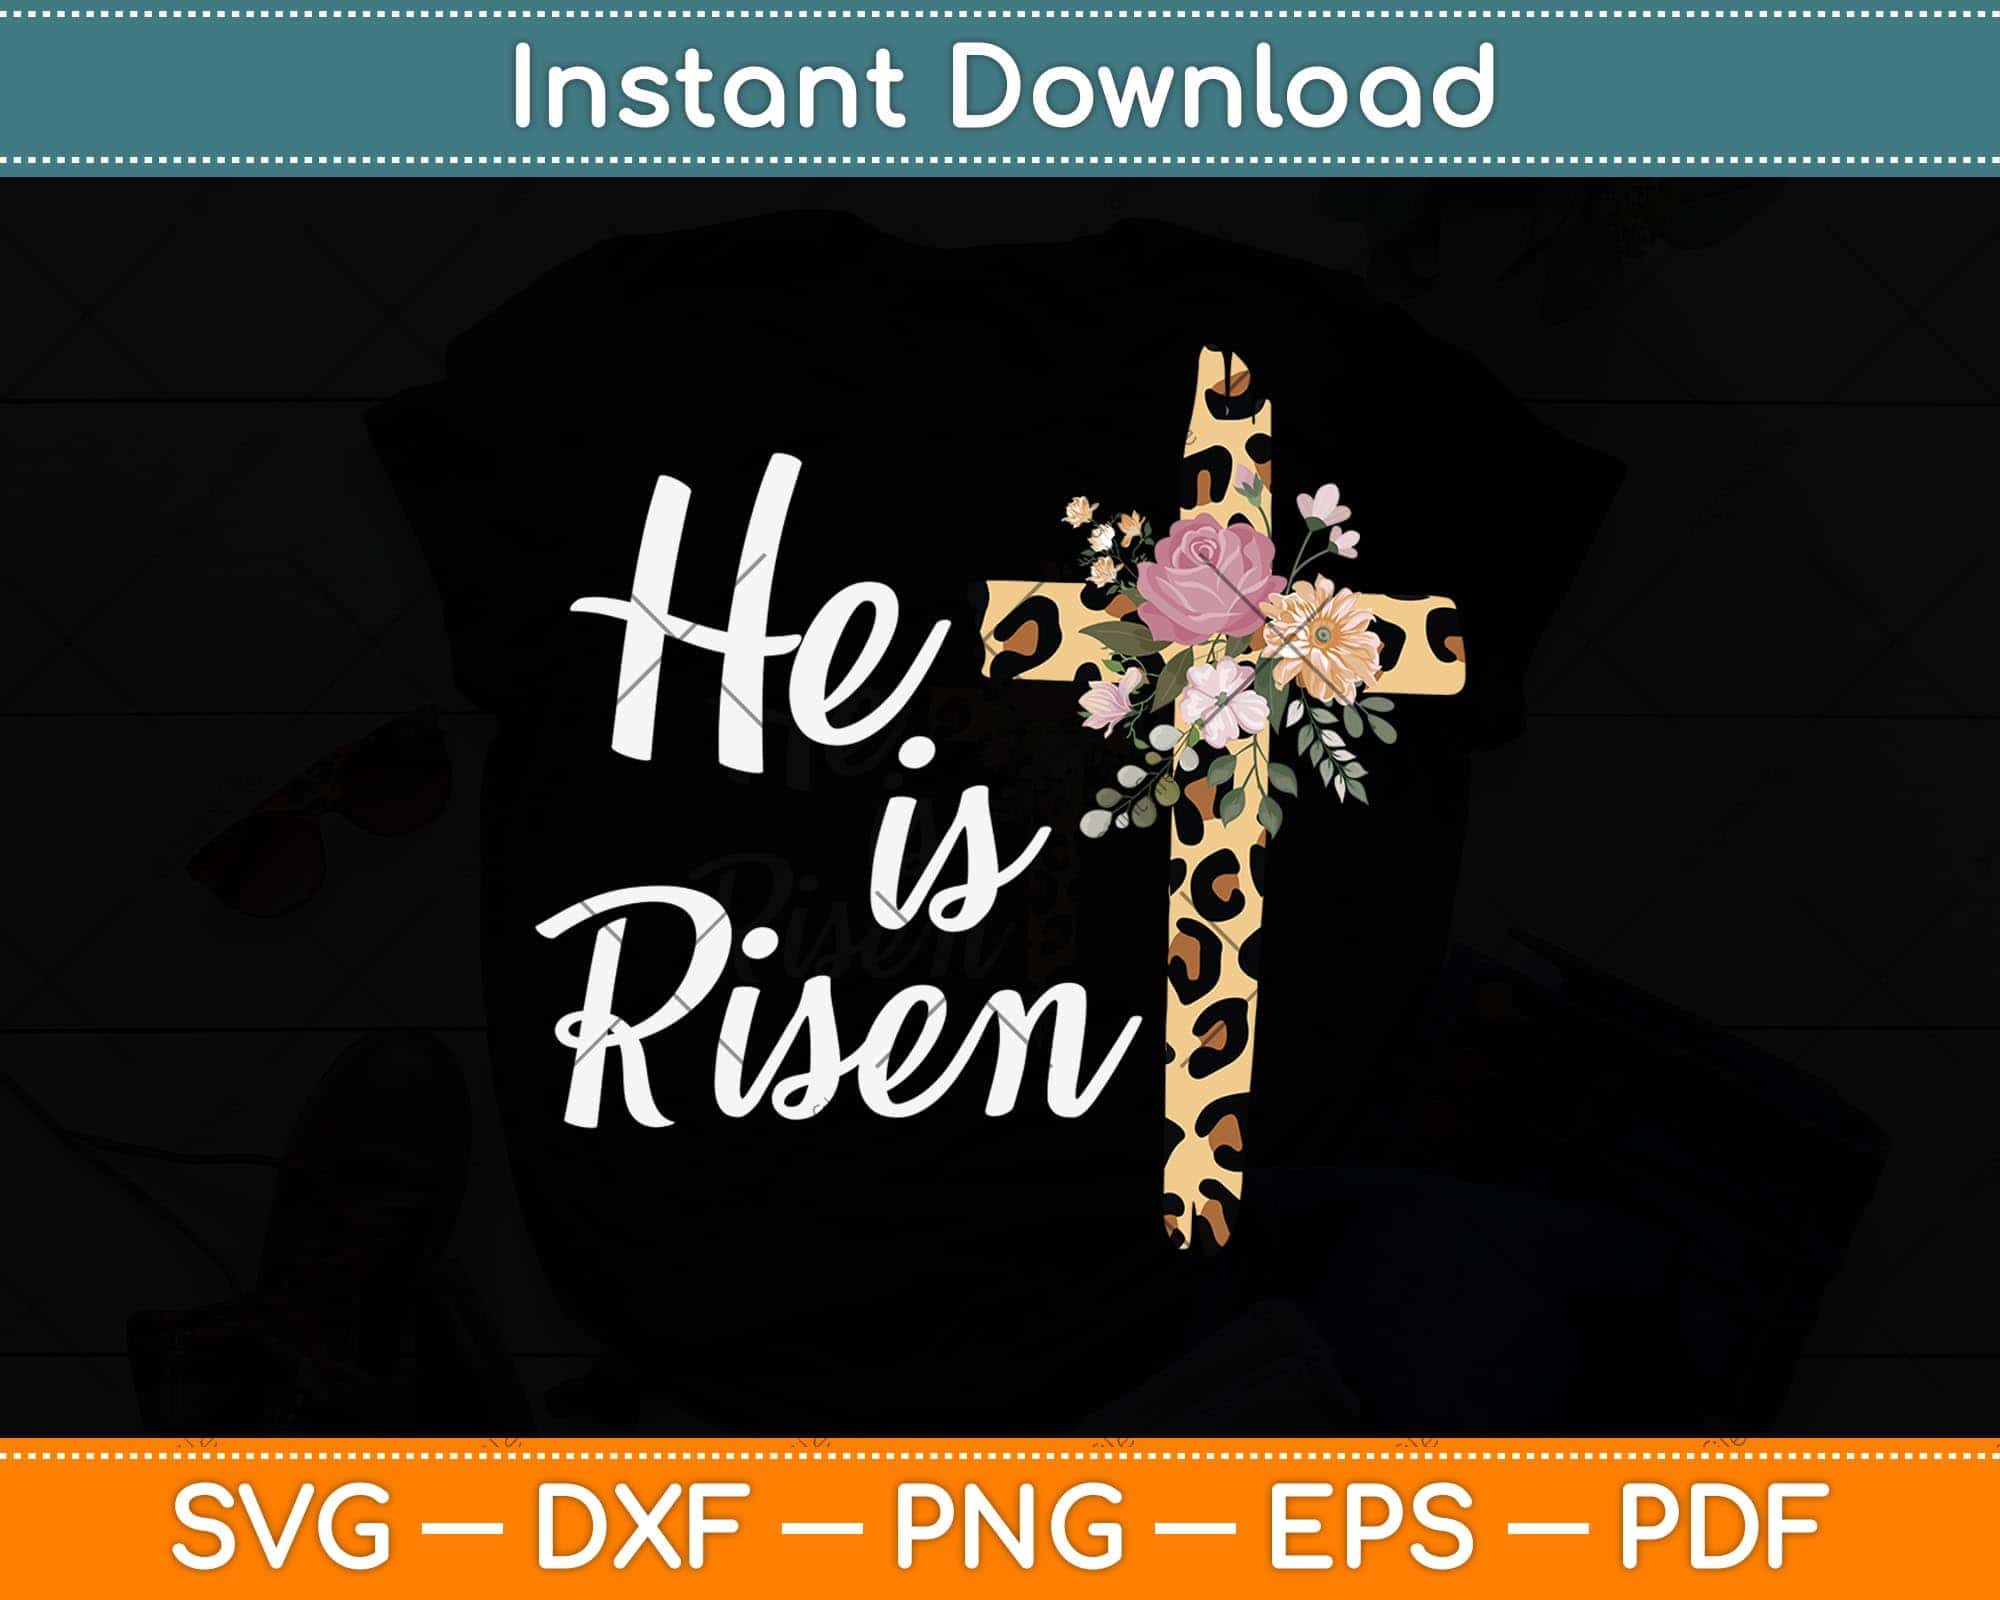 he is risen cross